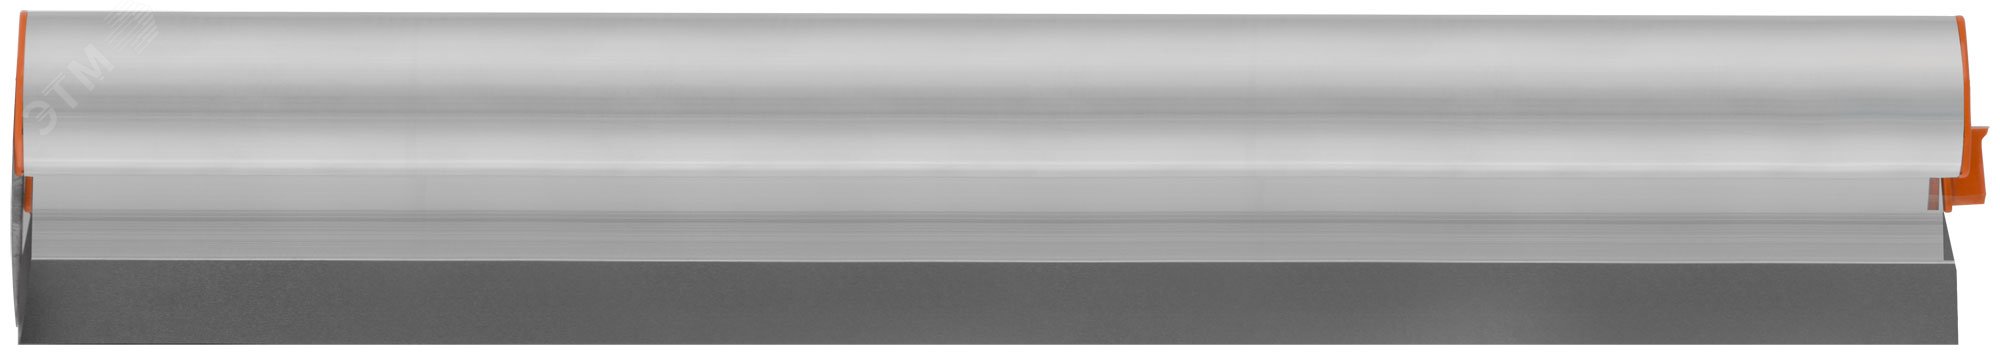 Шпатель-Правило Профи, нержавеющая сталь с алюминиевой ручкой 800 мм 09057 КУРС РОС - превью